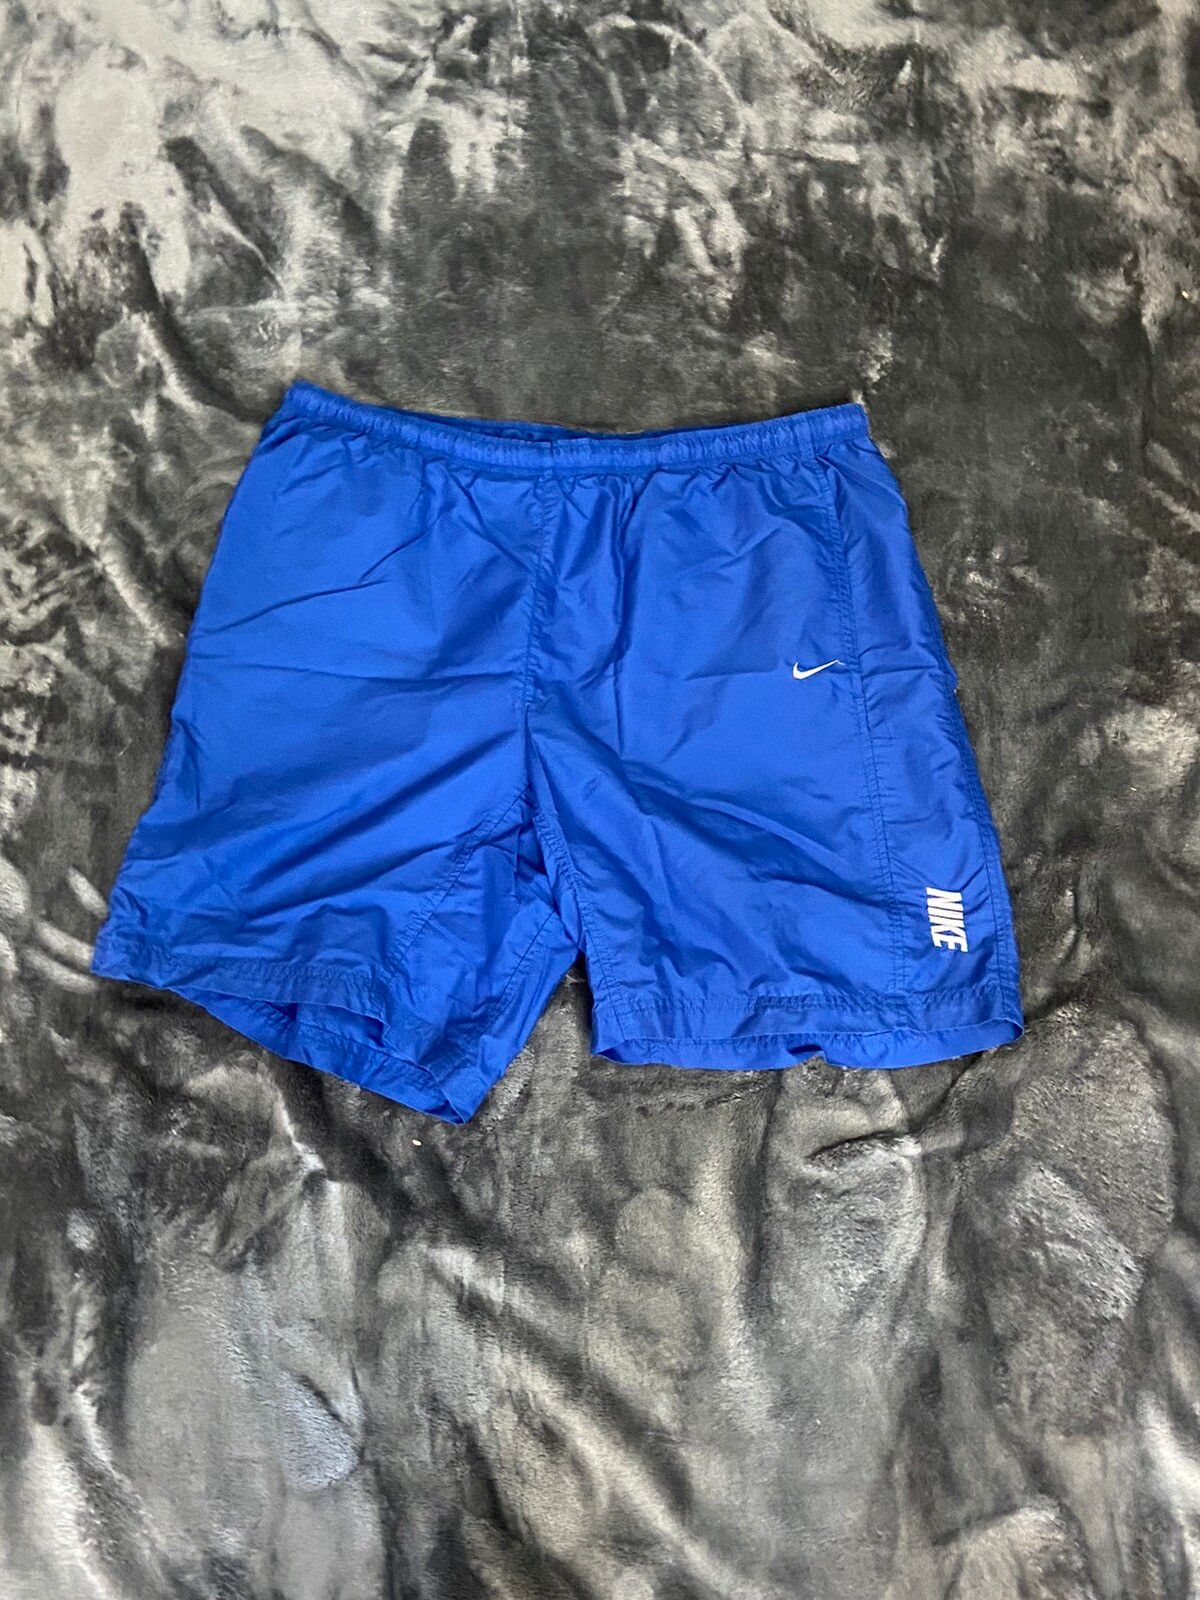 Nike Blue Nike shorts | Large | Grailed